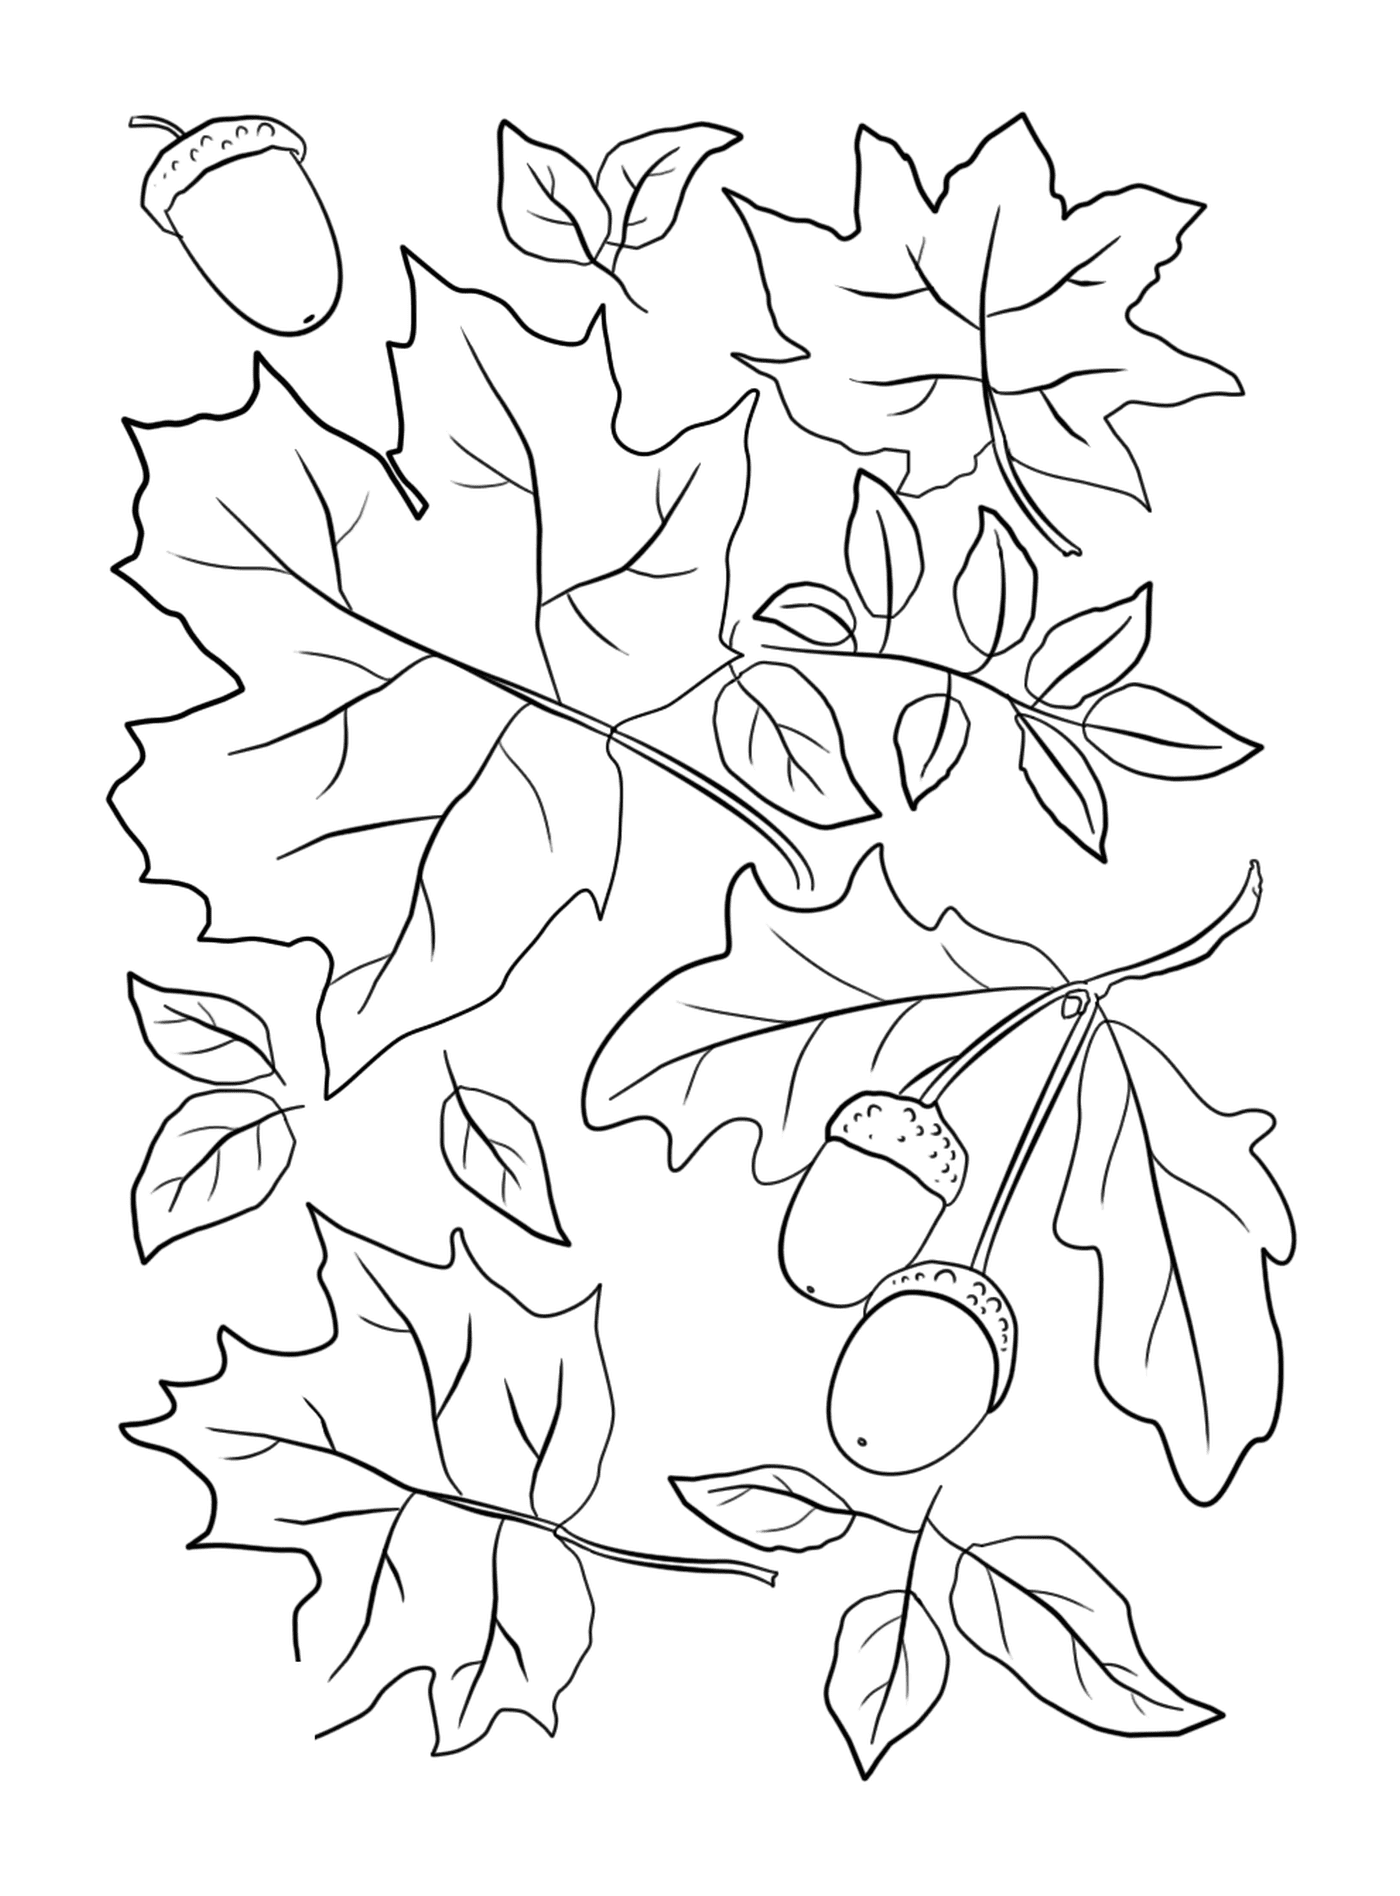   Feuilles et glands sur un arbre d'automne 